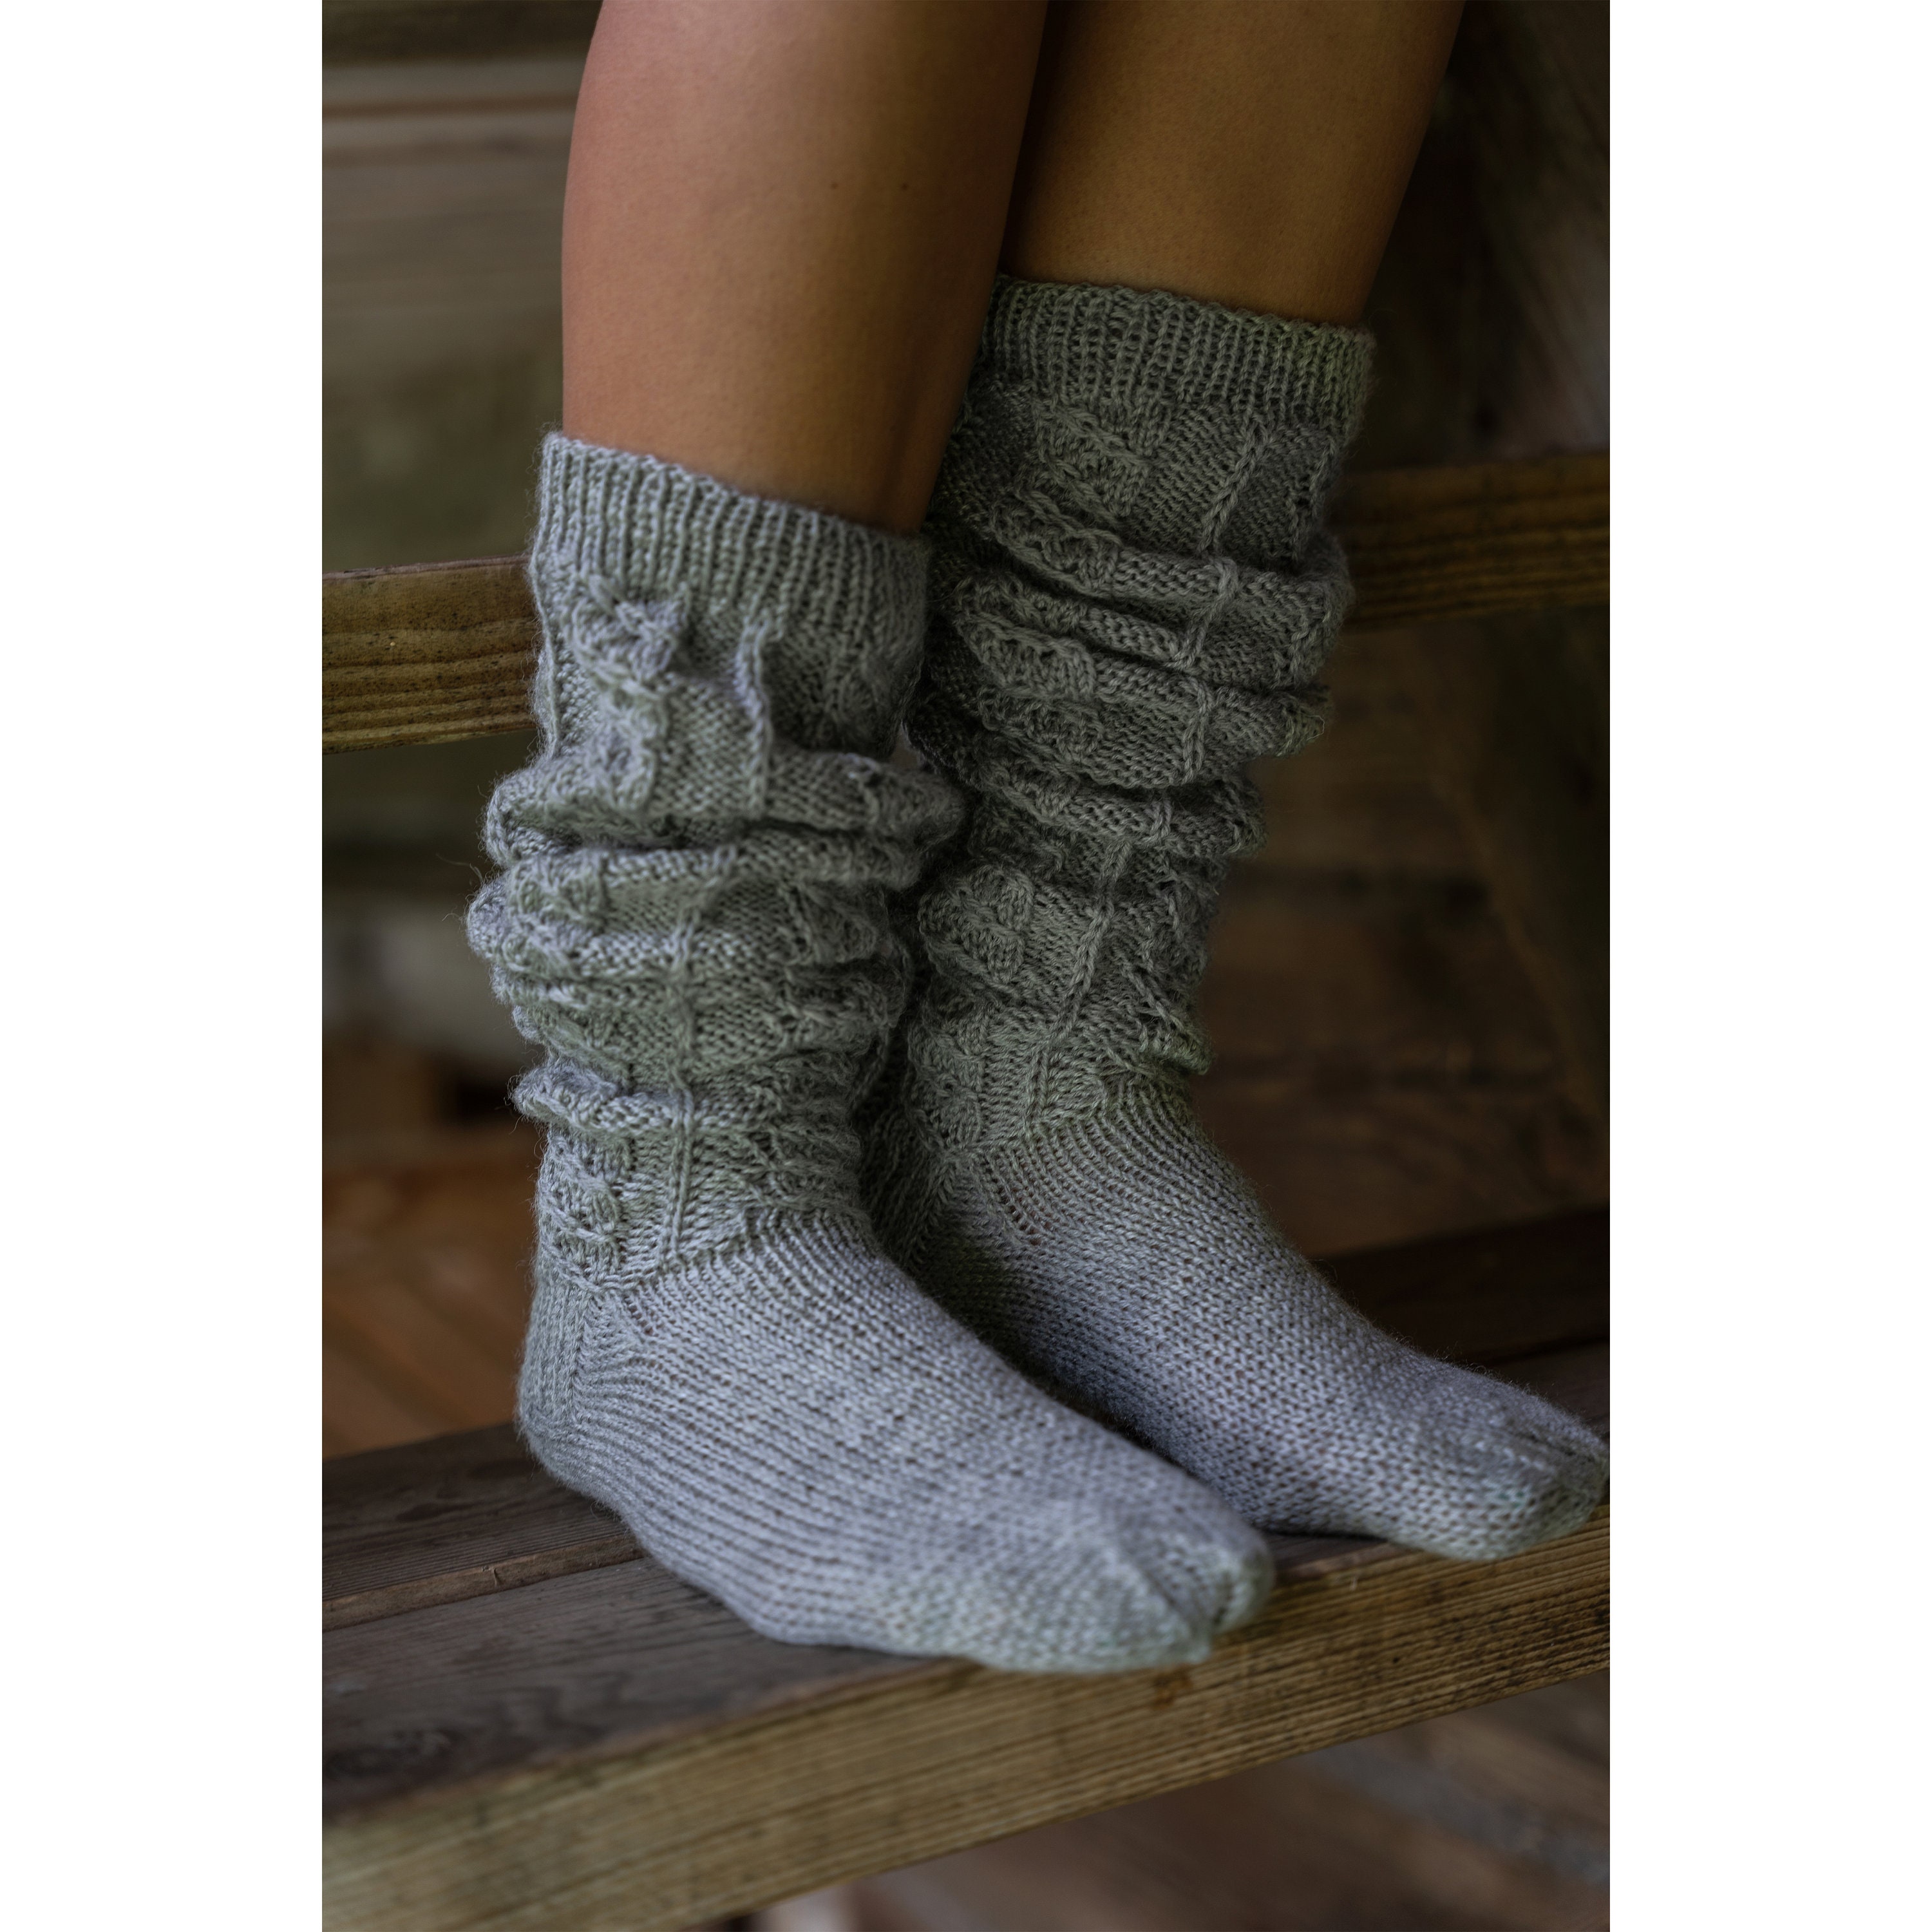 Hand Knitted Wool Women's Socks, Cosy Vintage Woolen Socks, Gift